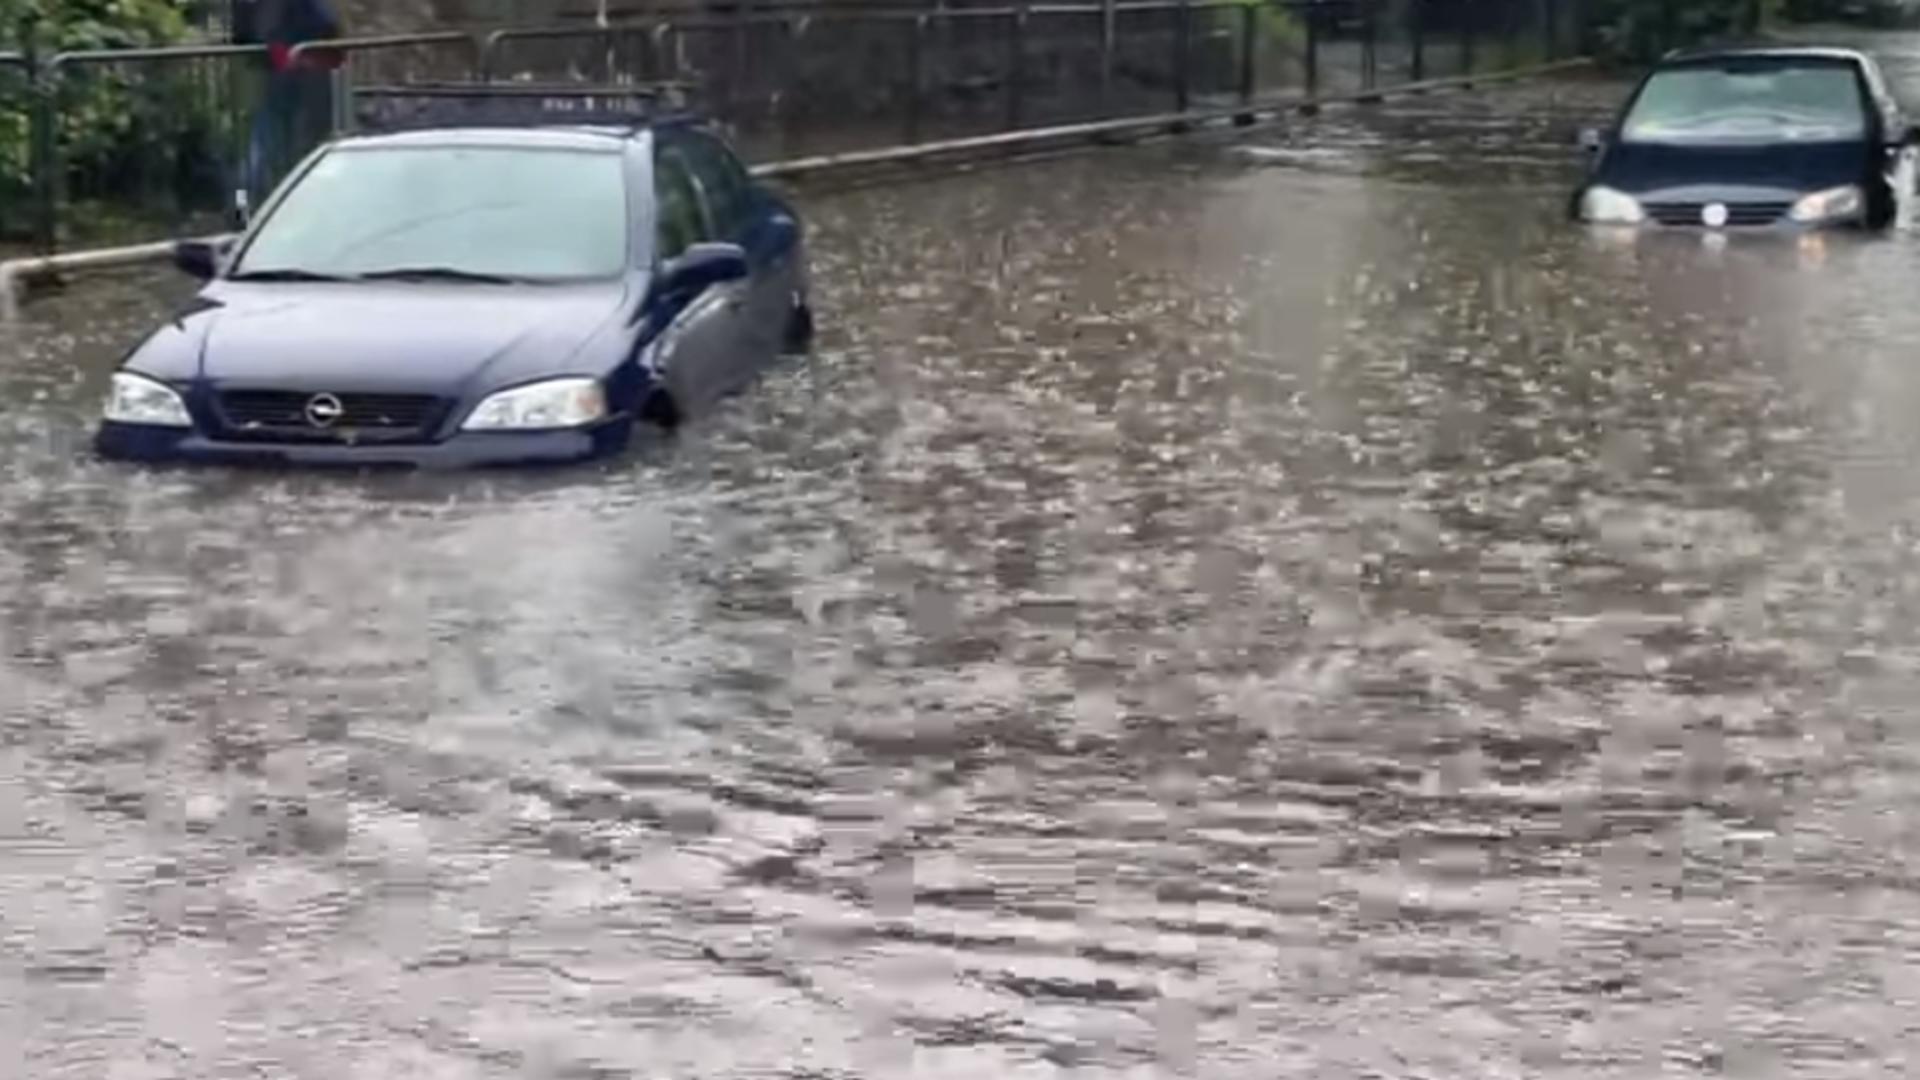 POTOP după Codul roșu de ploi torențiale: Străzi și mașini blocate la Timișoara și un spital inundat - Imaginile prăpădului